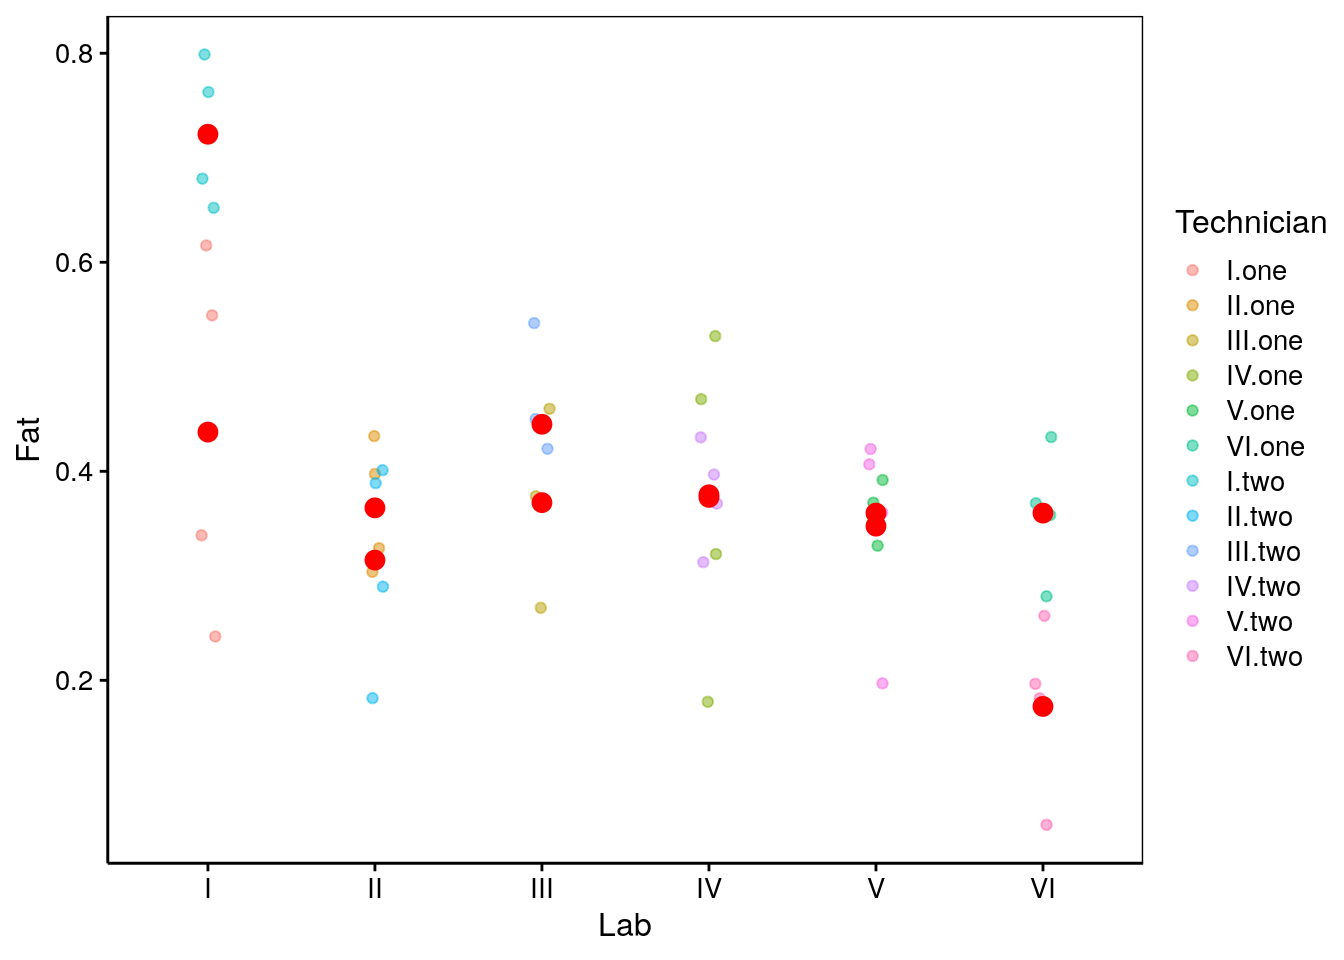 Mesures de fractions en matières grasses dans des oeufs dans six laboratoires, par douze techniciens différents. Les points rouges sont les moyennes par technicien.